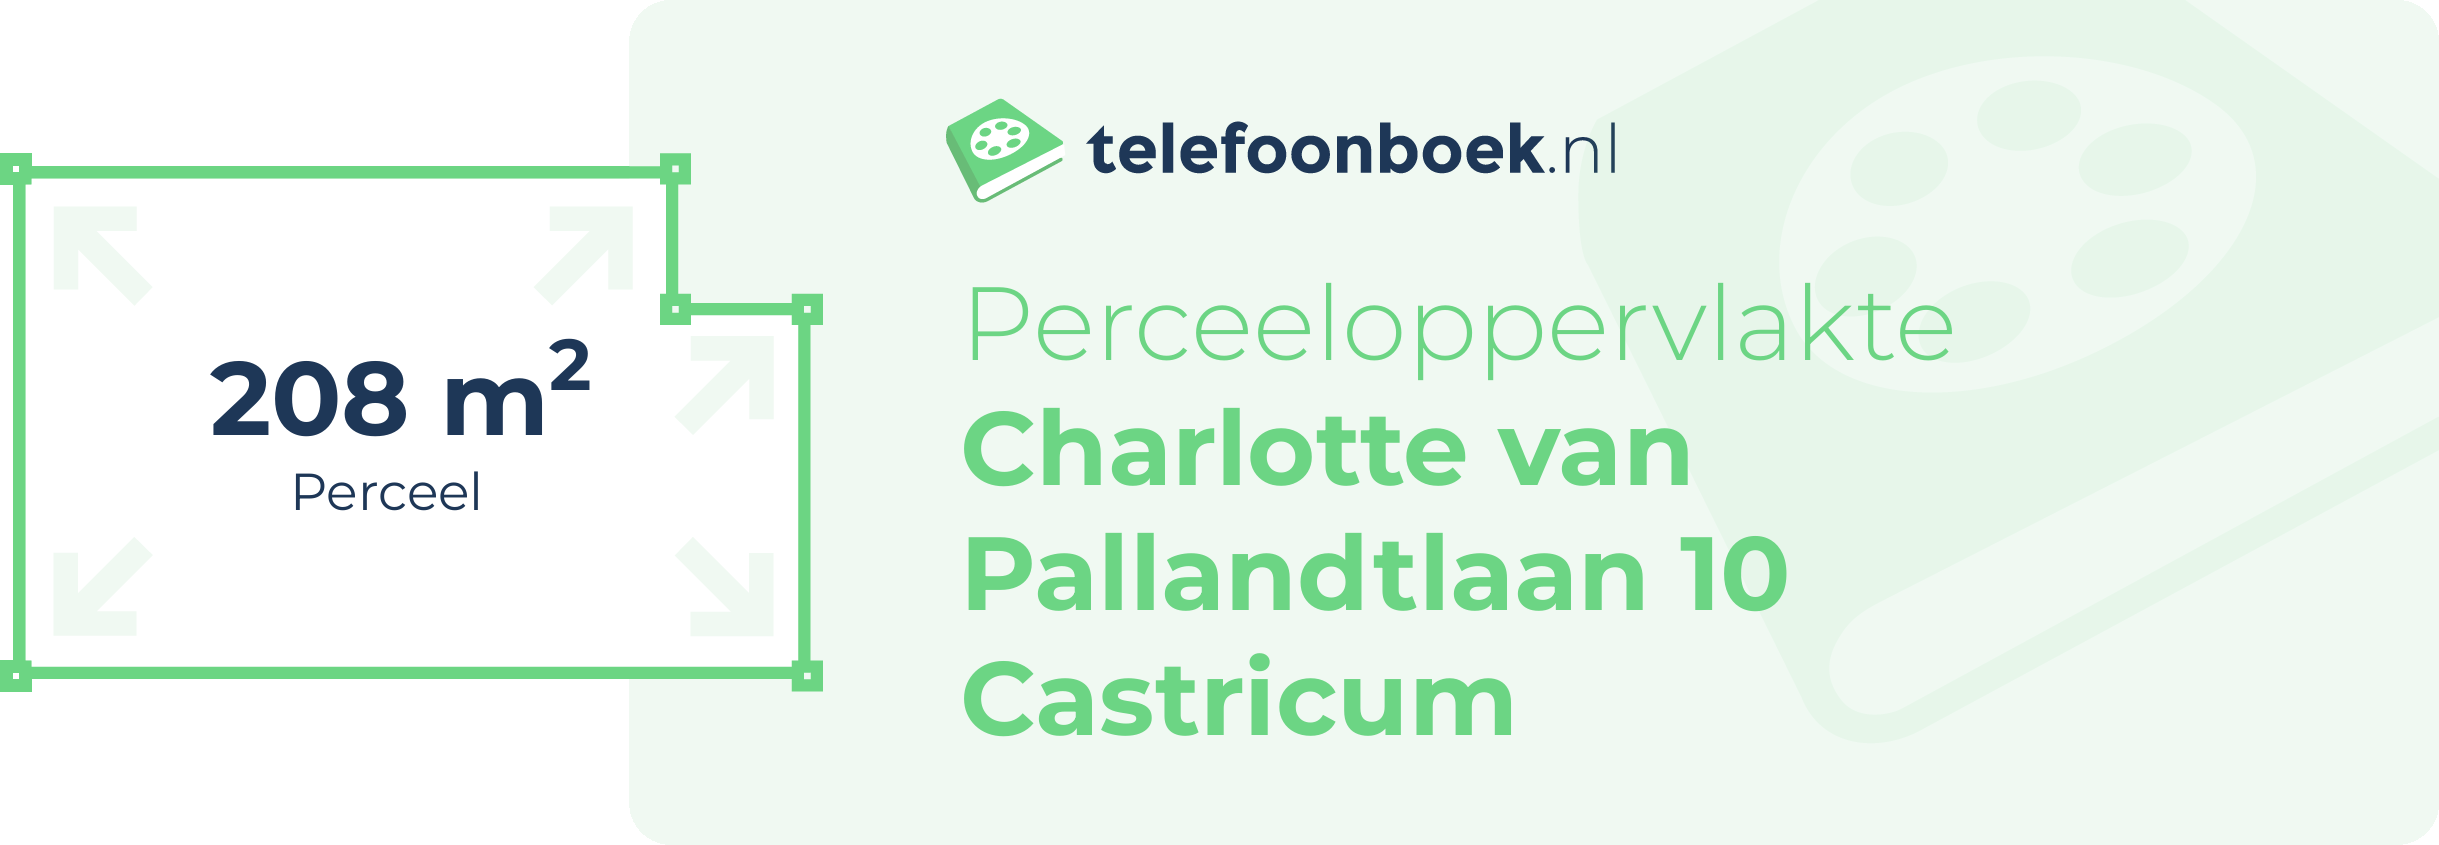 Perceeloppervlakte Charlotte Van Pallandtlaan 10 Castricum